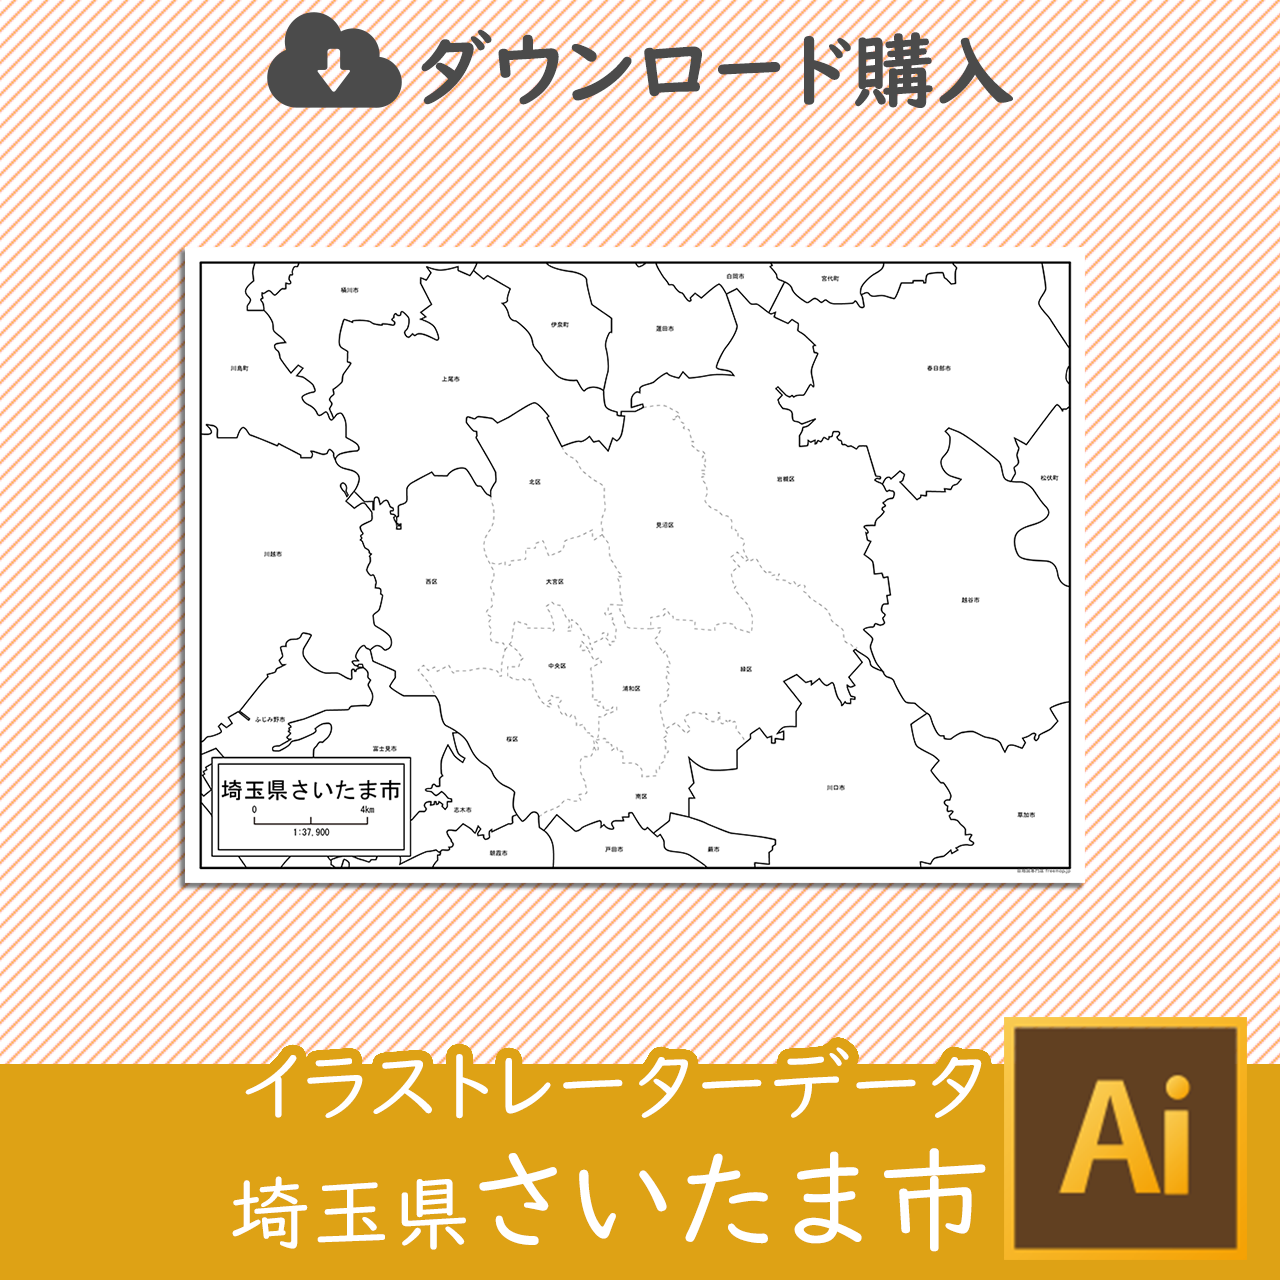 埼玉県さいたま市のaiデータのサムネイル画像